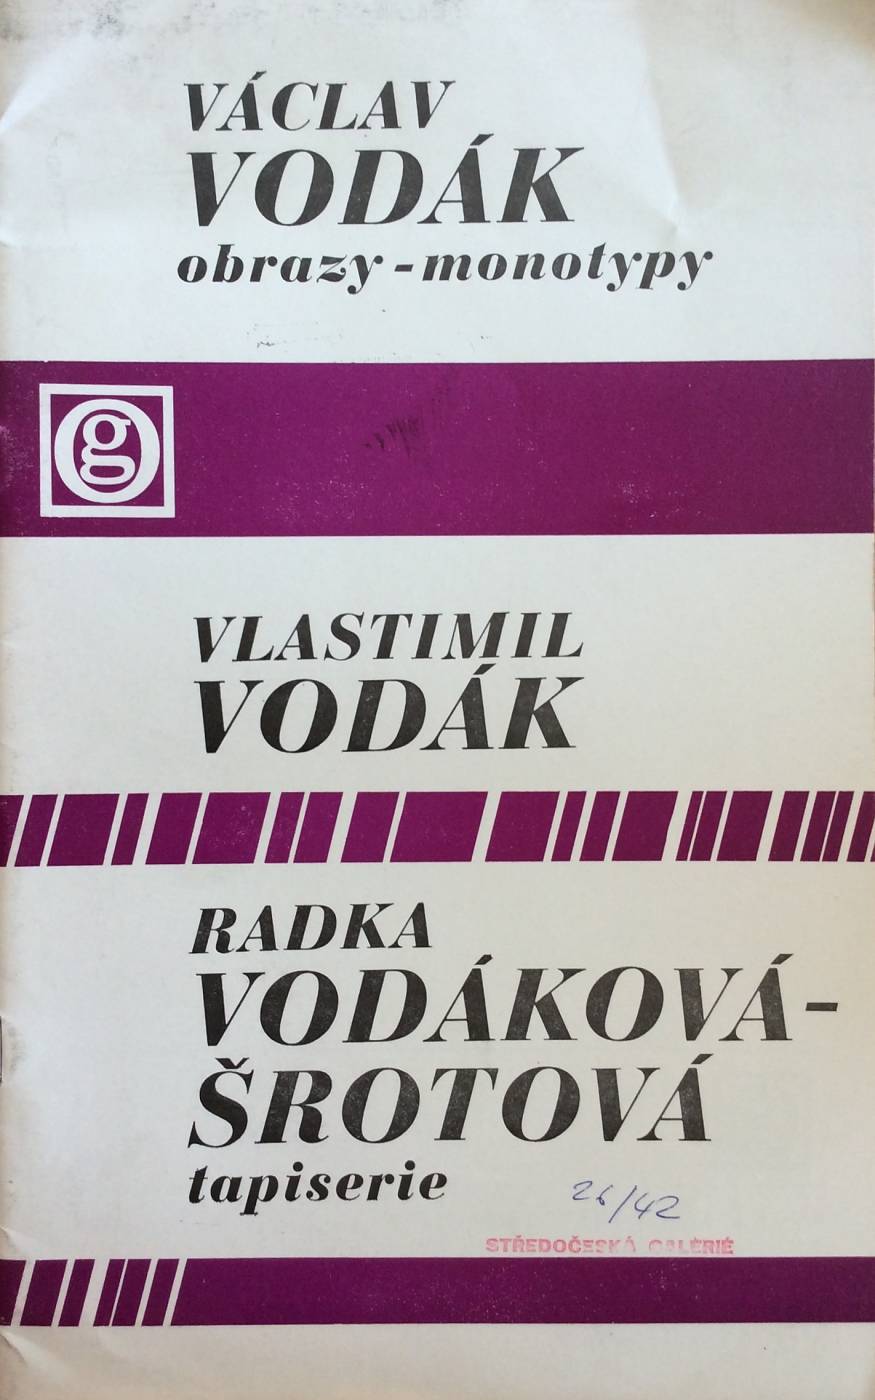 Václav Vodák – obrazy, monotypy / Vlastimil Vodák – tapiserie / Radka Vodáková-Šrotová – tapiserie